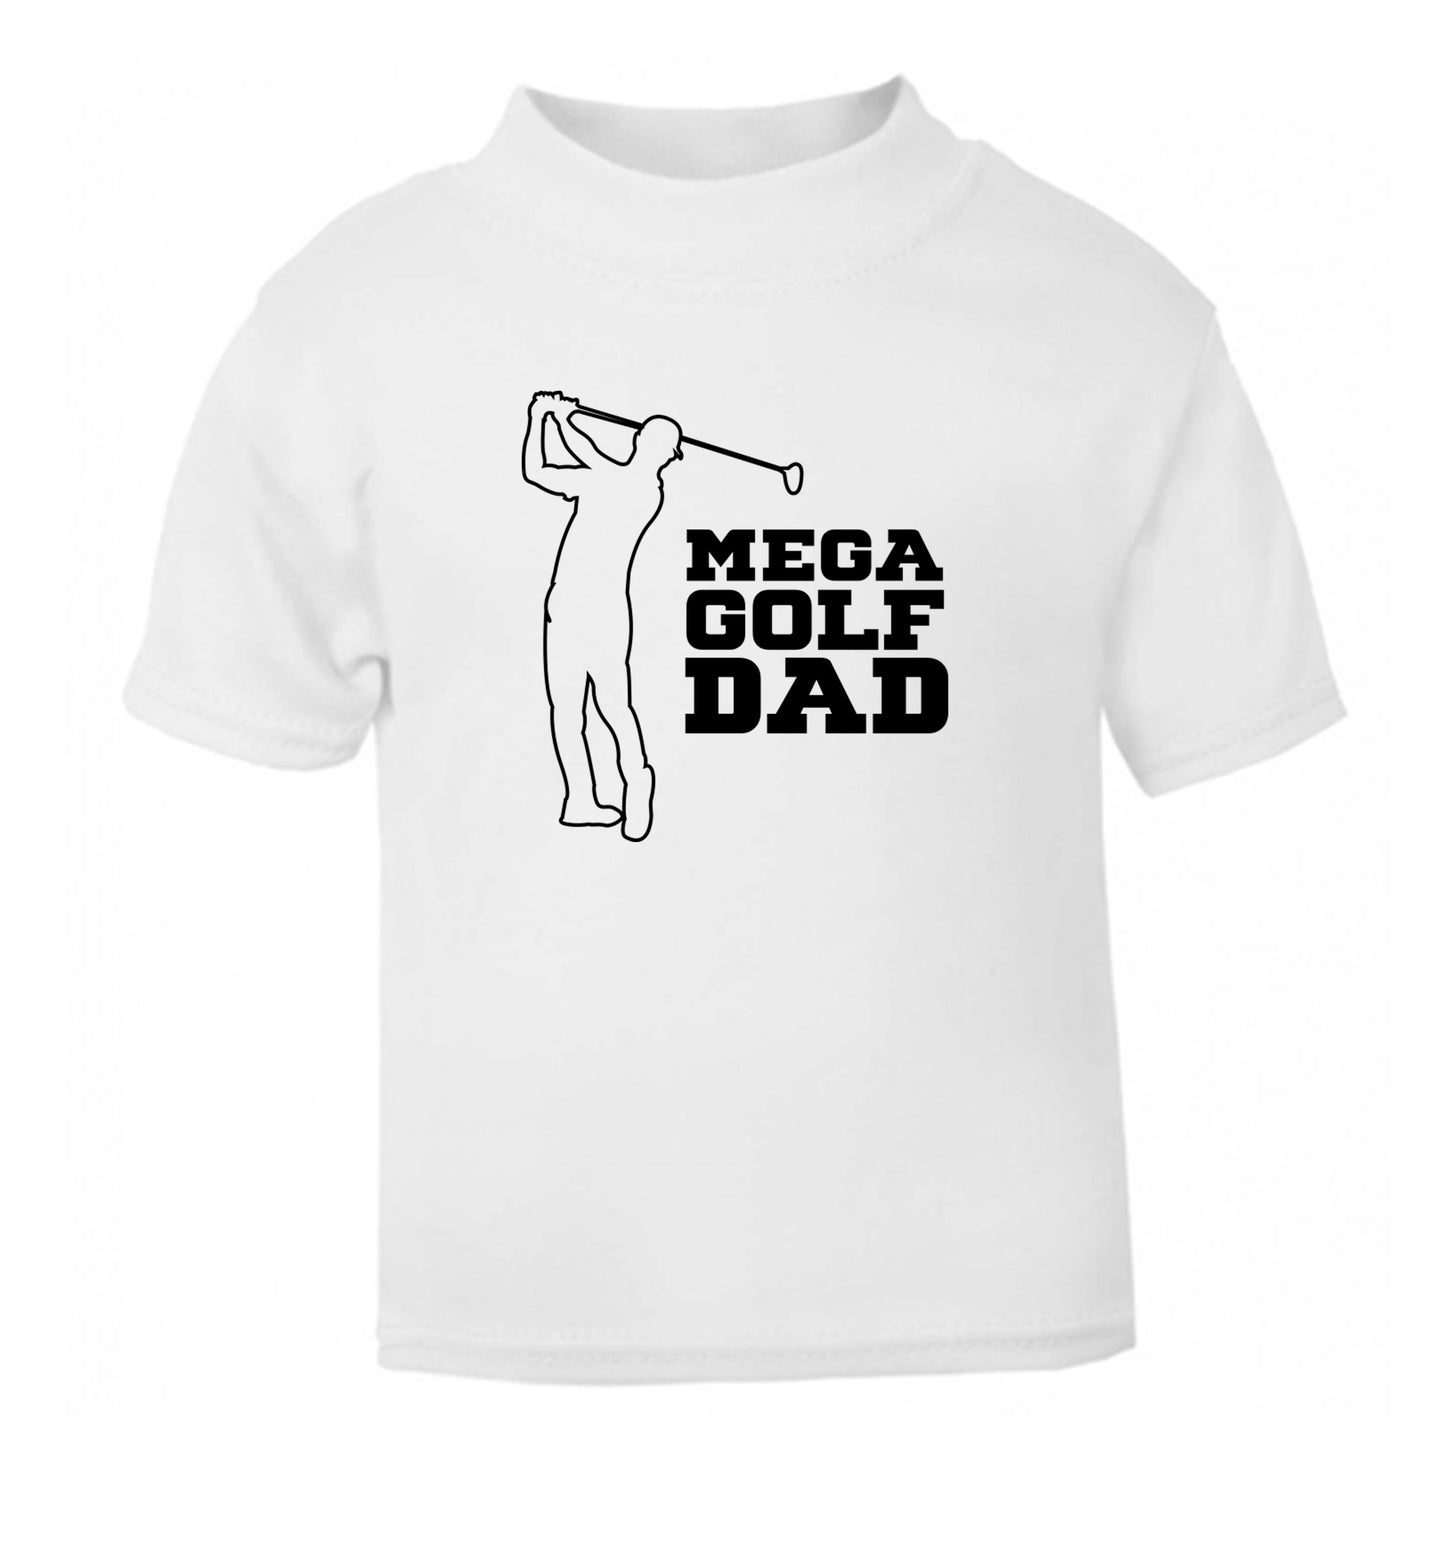 Mega golfing dad white Baby Toddler Tshirt 2 Years